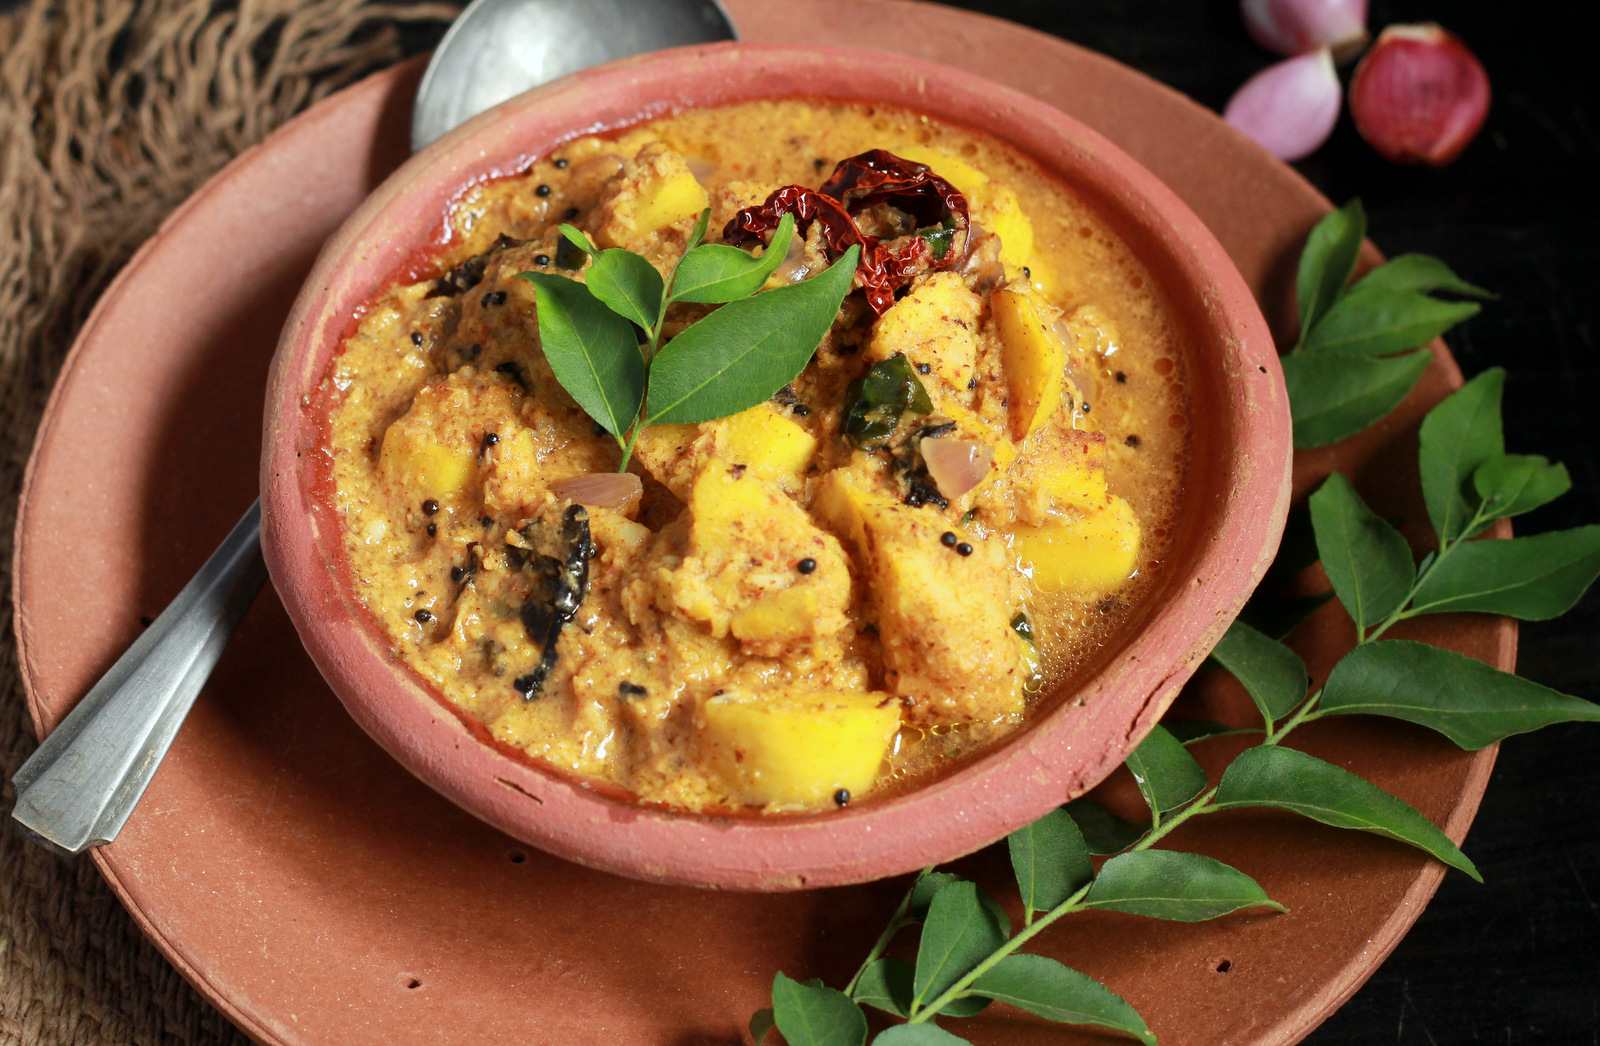 केरला स्टाइल अरबी की सब्ज़ी रेसिपी - Kerala Style Arbi Curry